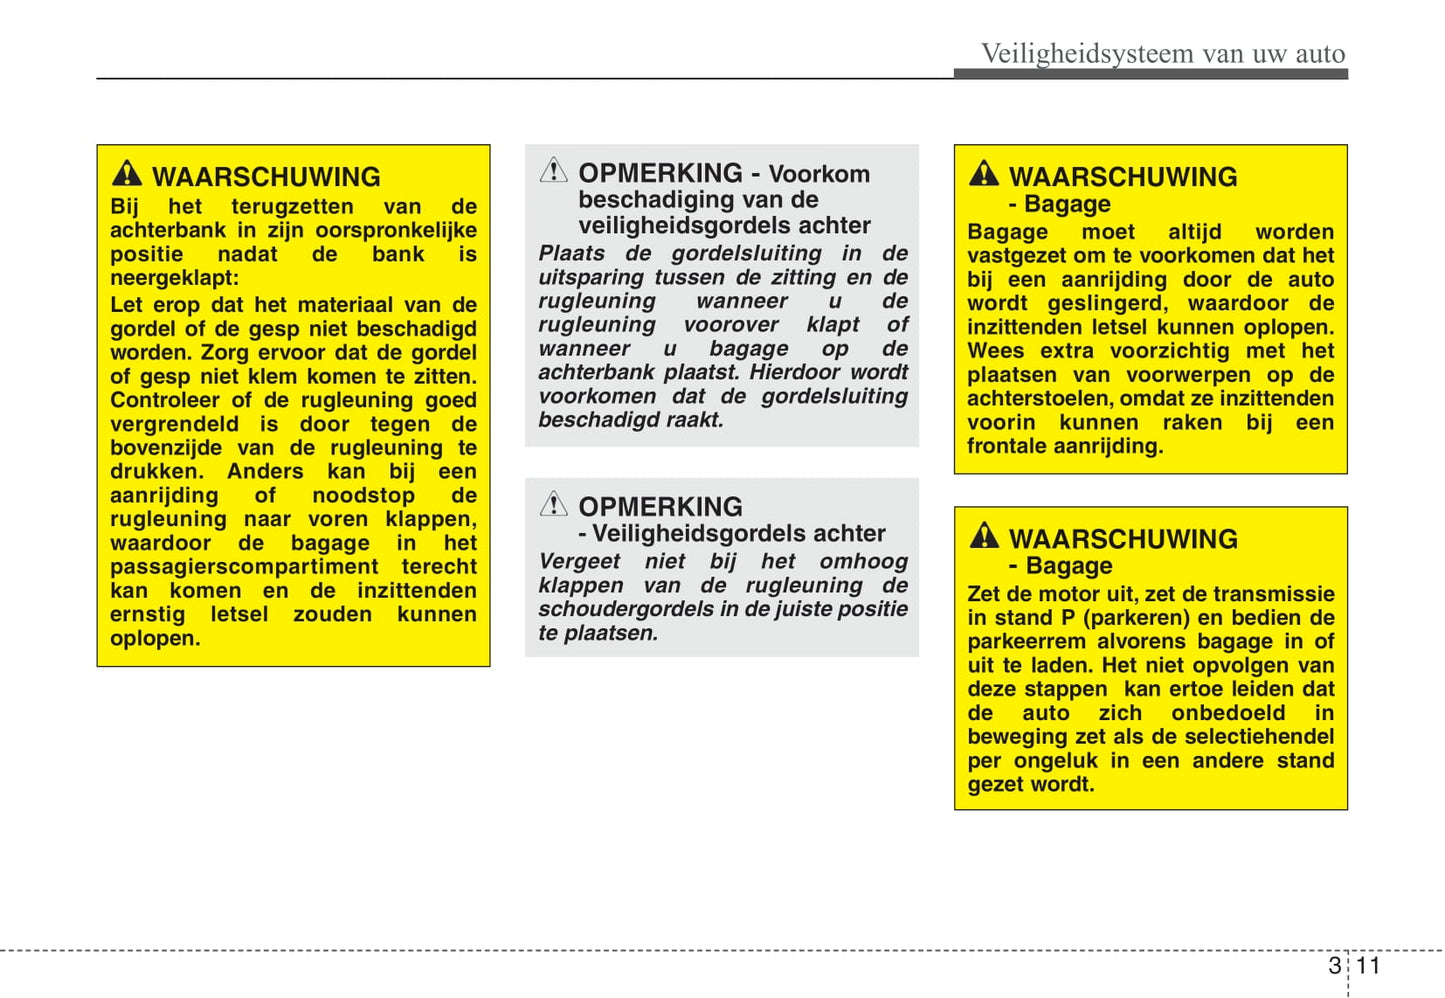 2009-2010 Kia Venga Owner's Manual | Dutch